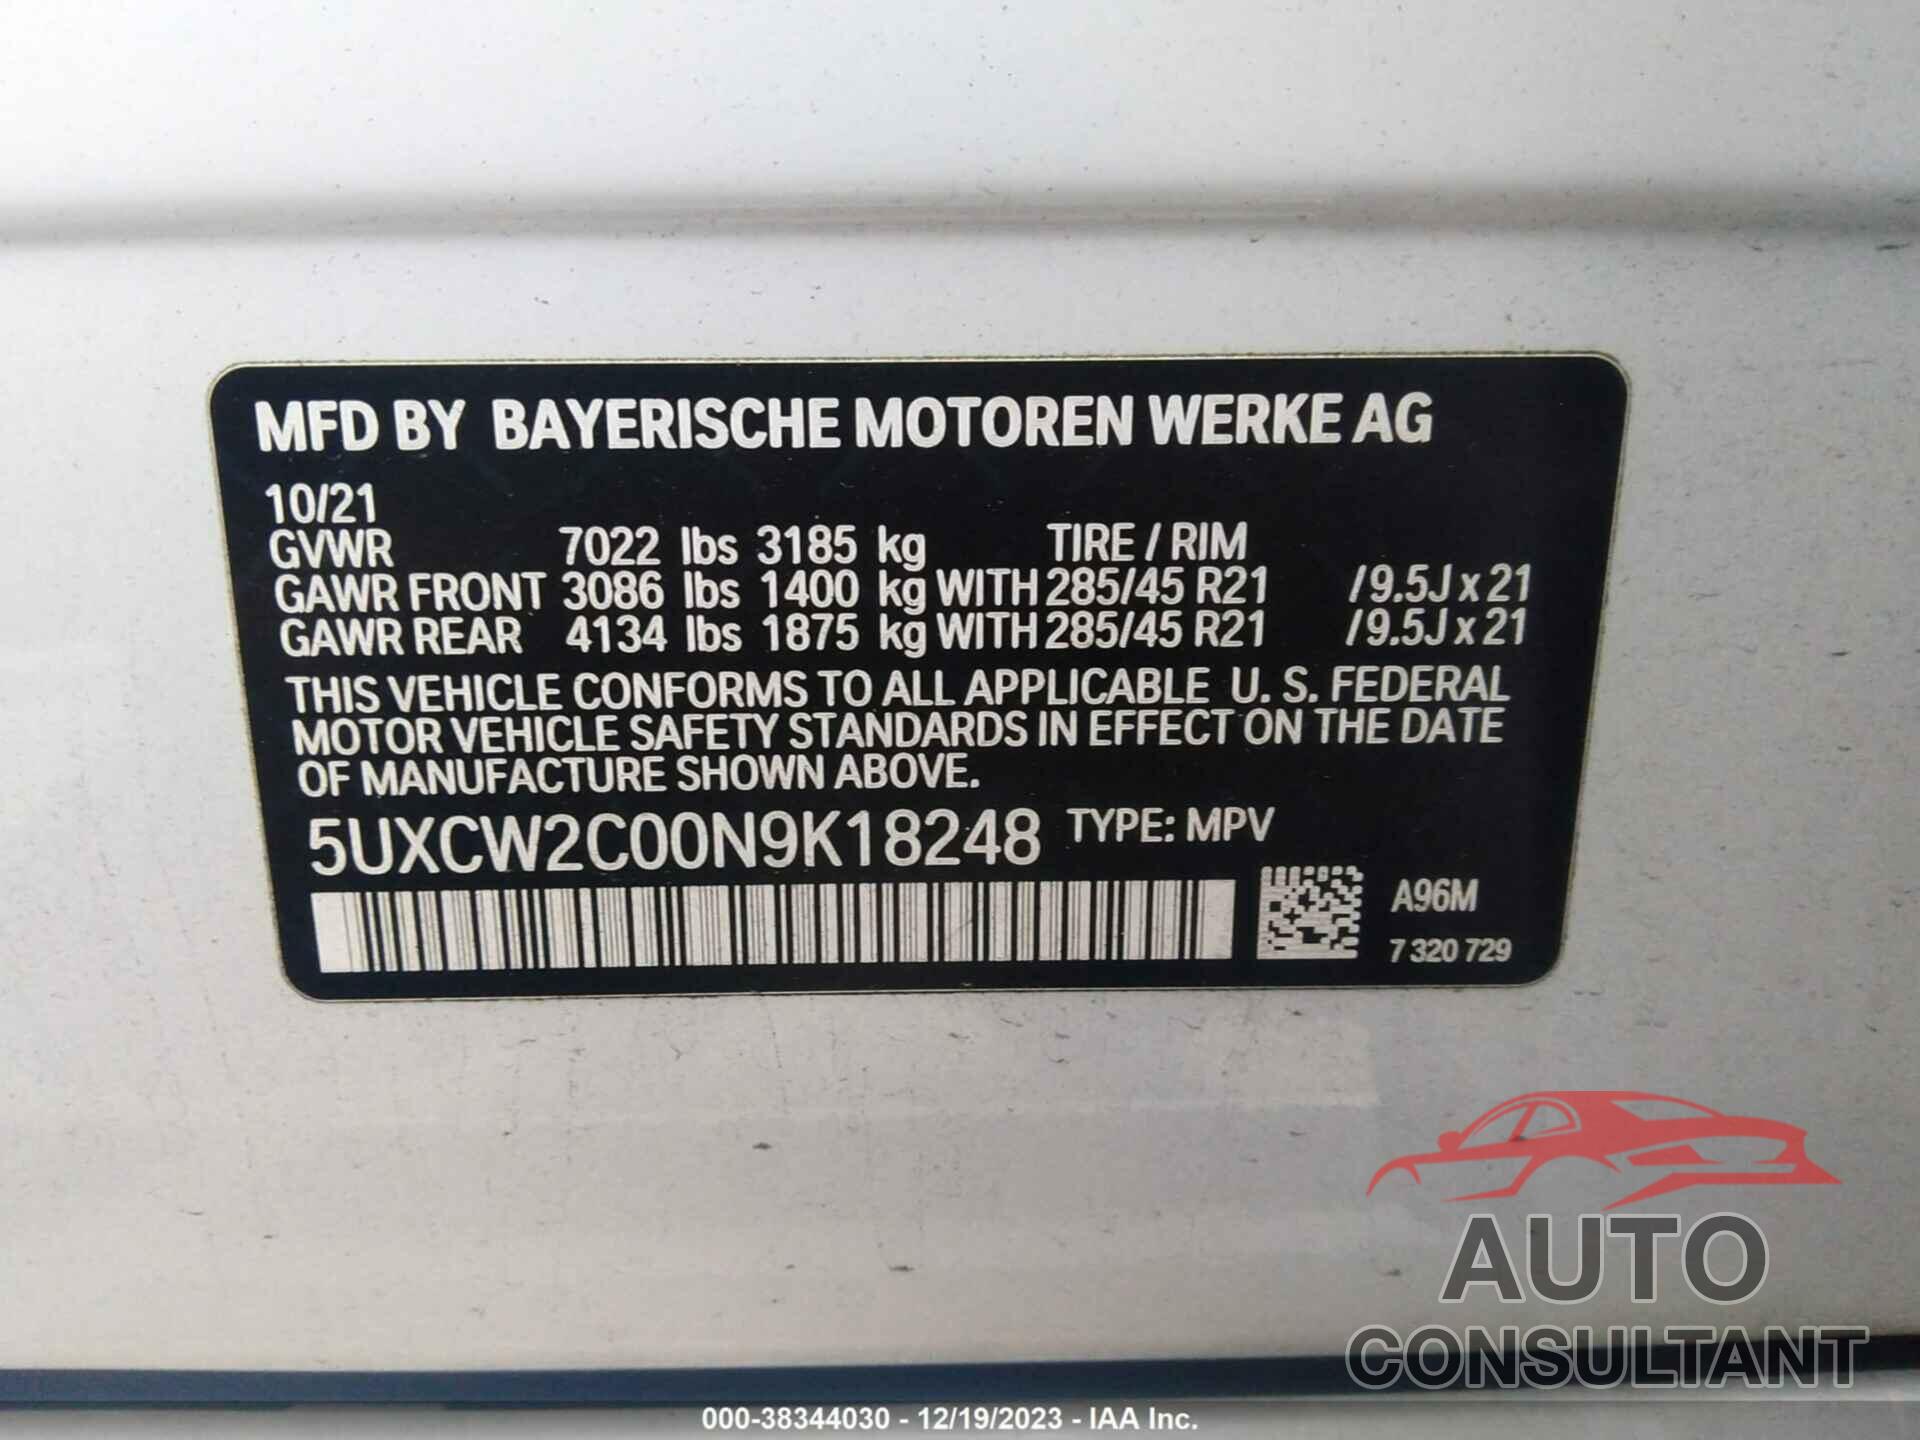 BMW X7 2022 - 5UXCW2C00N9K18248